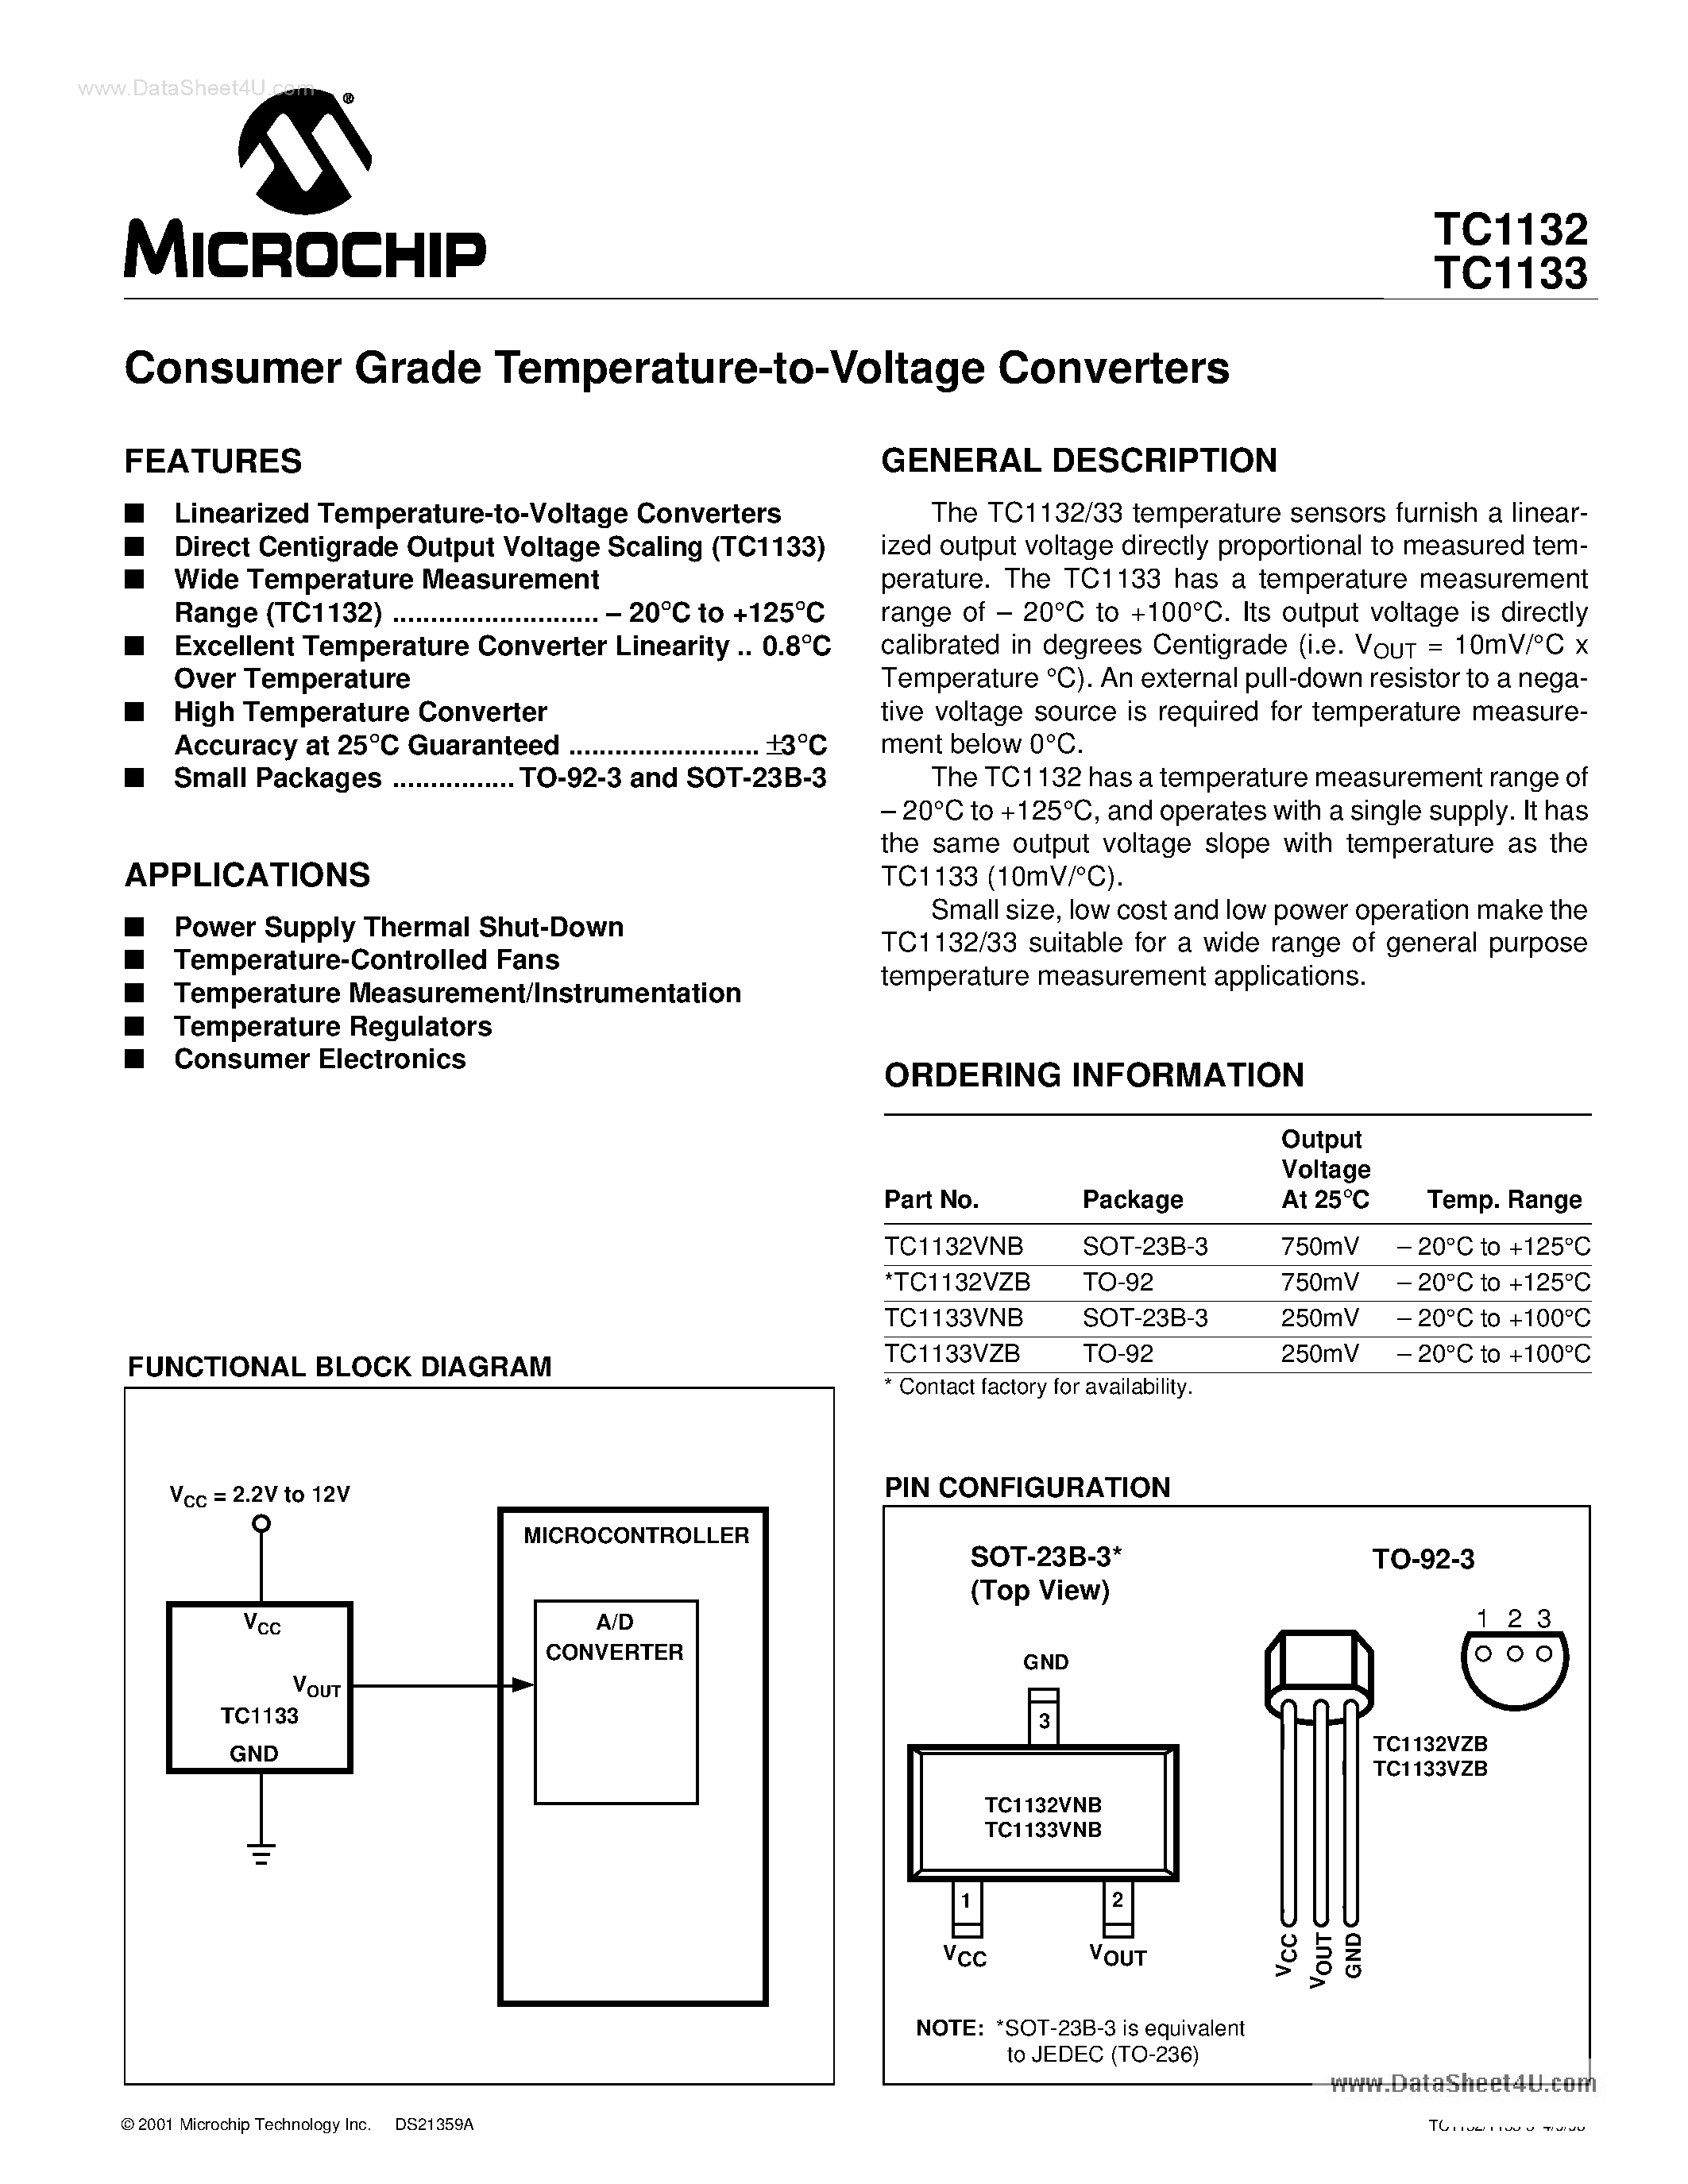 Datasheet TC1132 - (TC1132 / TC1133) Consumer Grade Temperature to Voltage Converters page 1